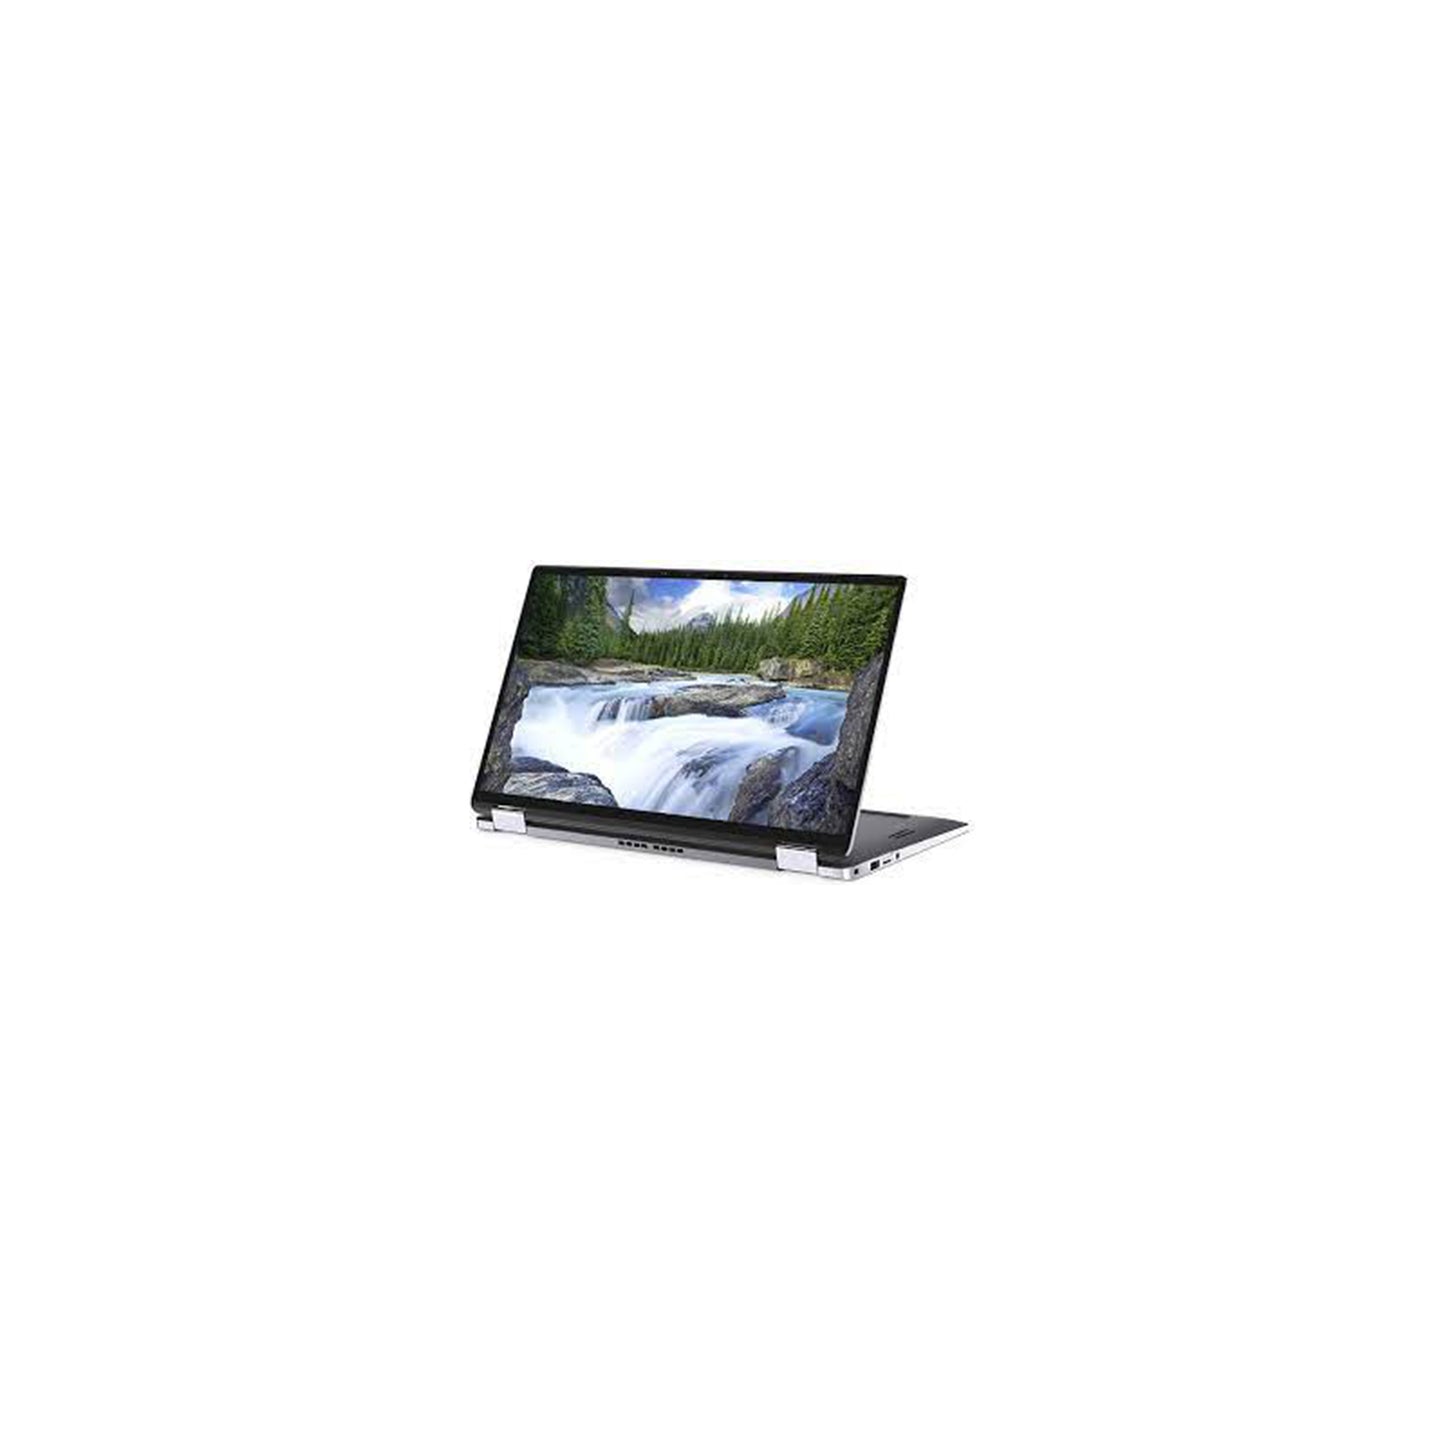 DELL LATITUE 7400 2-IN-1 -14 Inch Touch Screen Laptop - Intel Core I5 Gen 8 - 16 GB - Intel UHD graphics 620 - Windows 11 Original